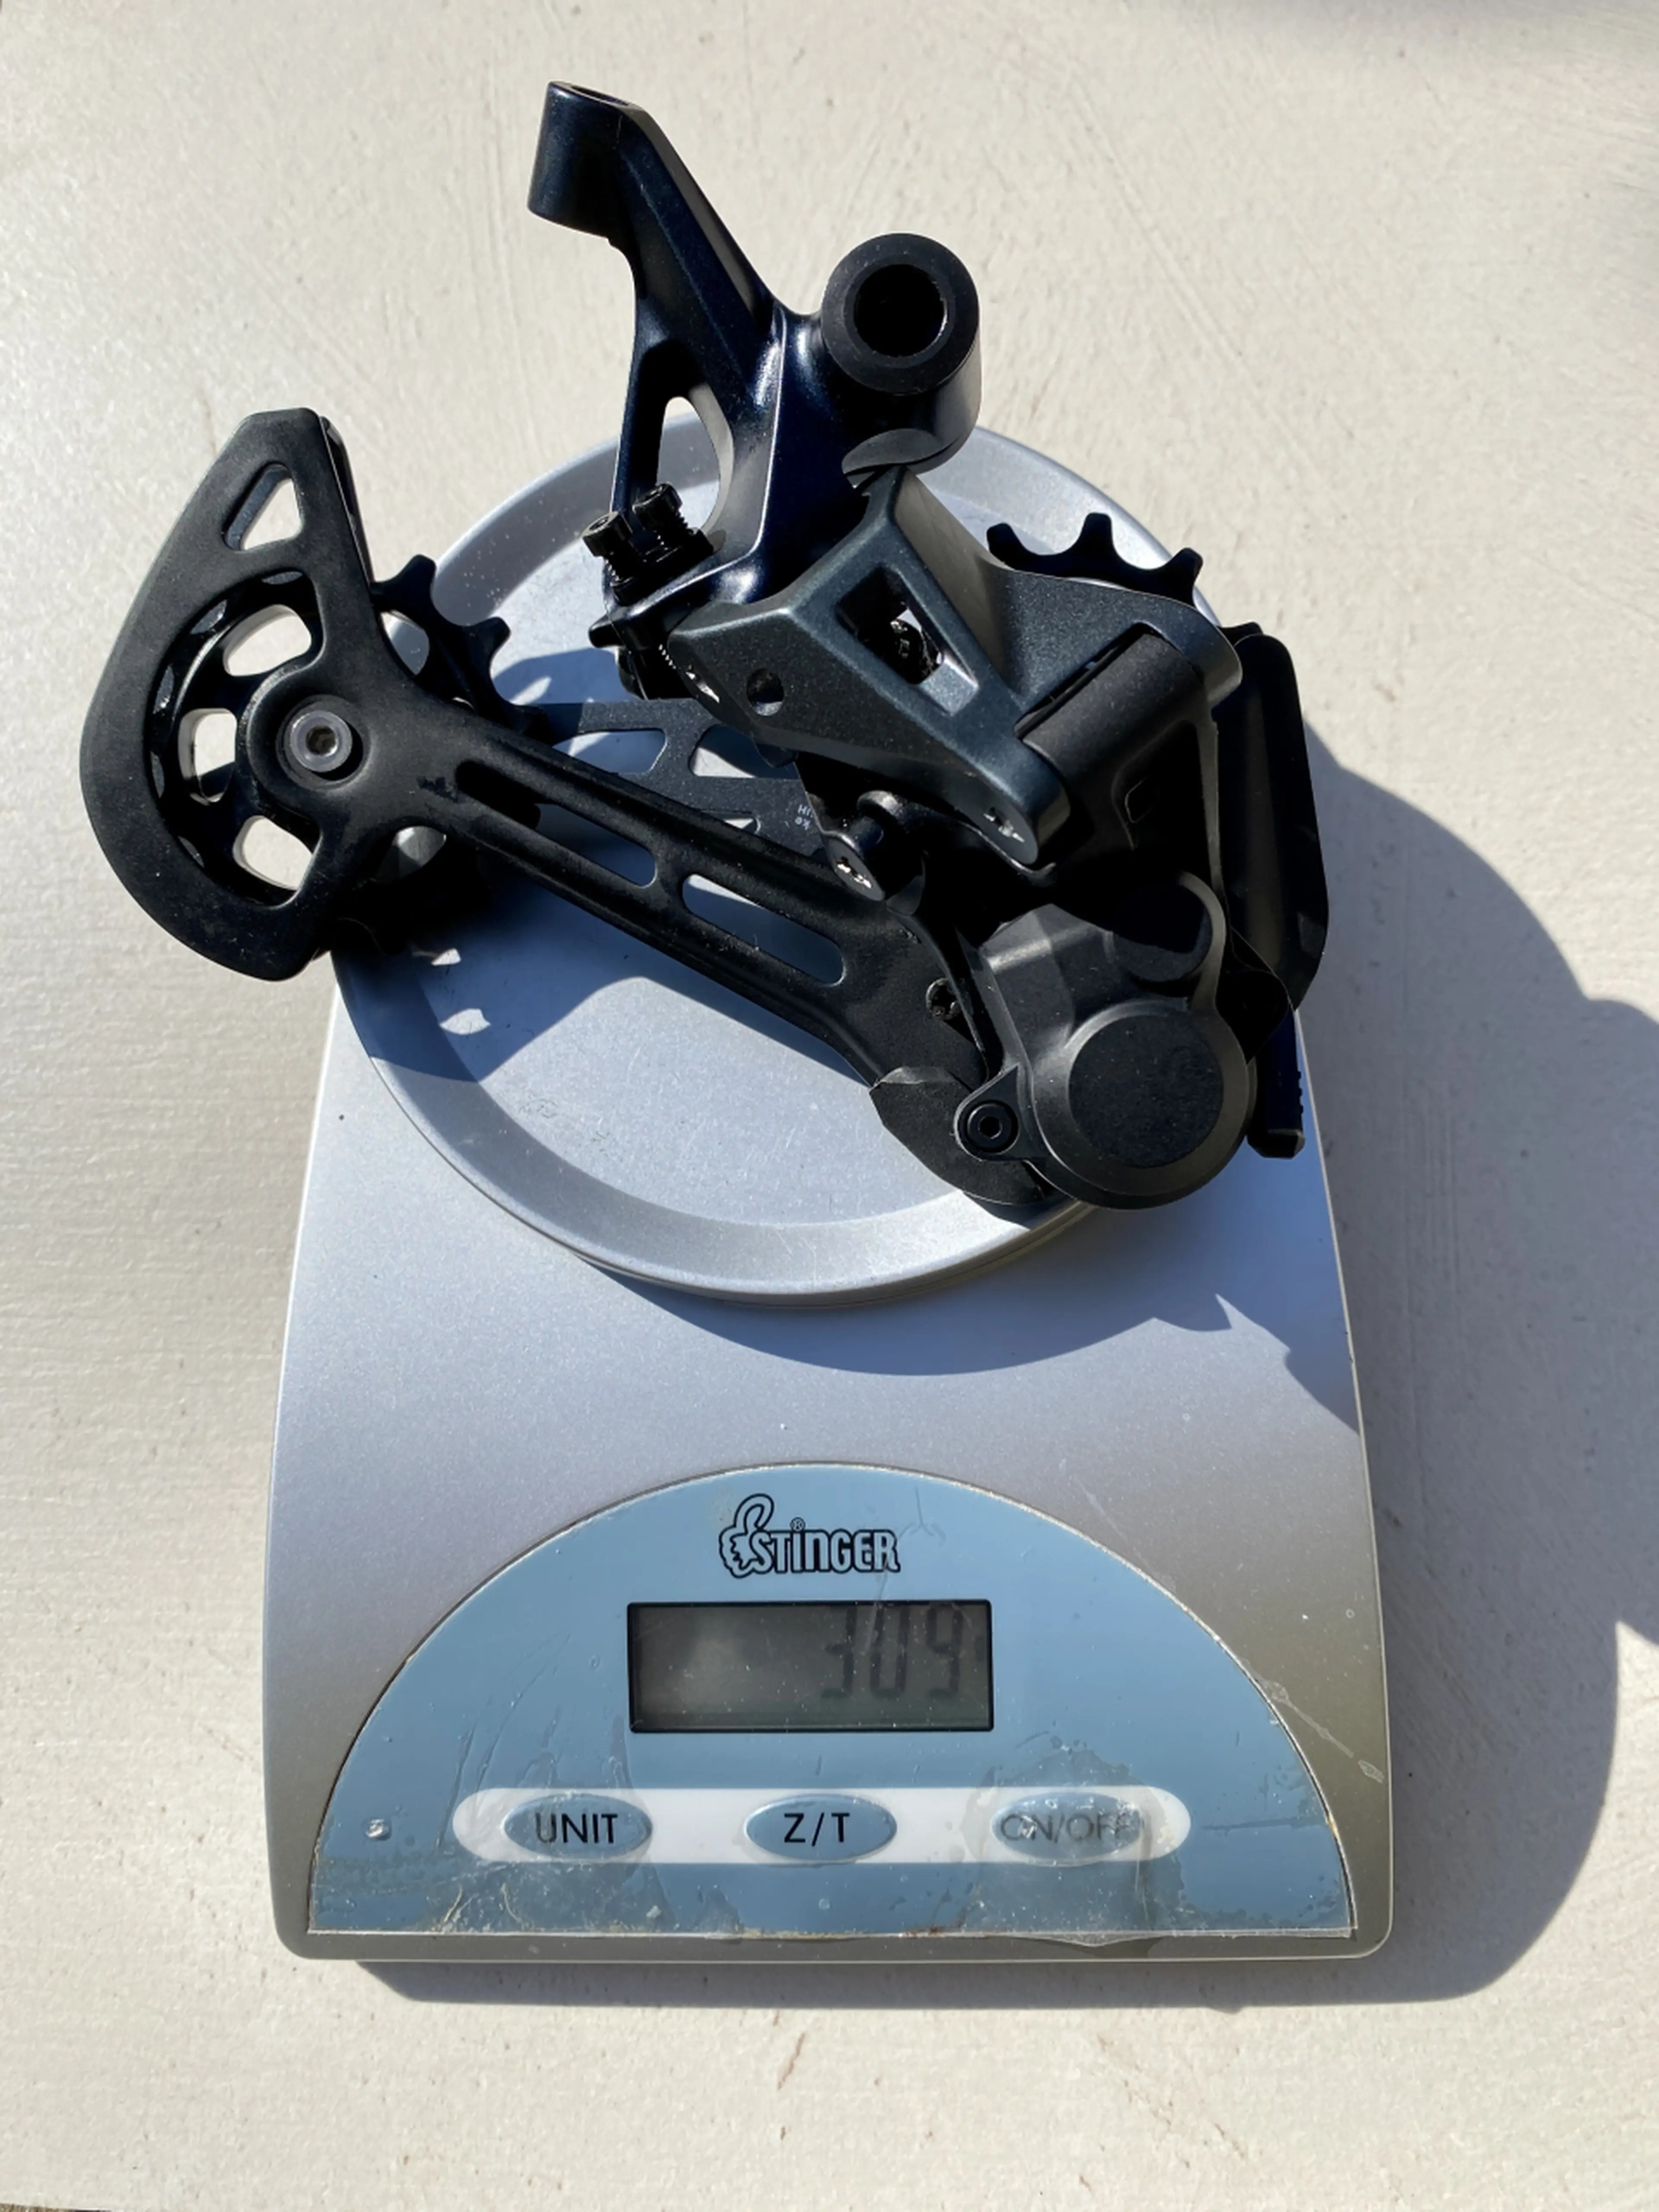 7. Schimbator Shimano SLX RD-M7100 - 12 sp. lung (SGS)